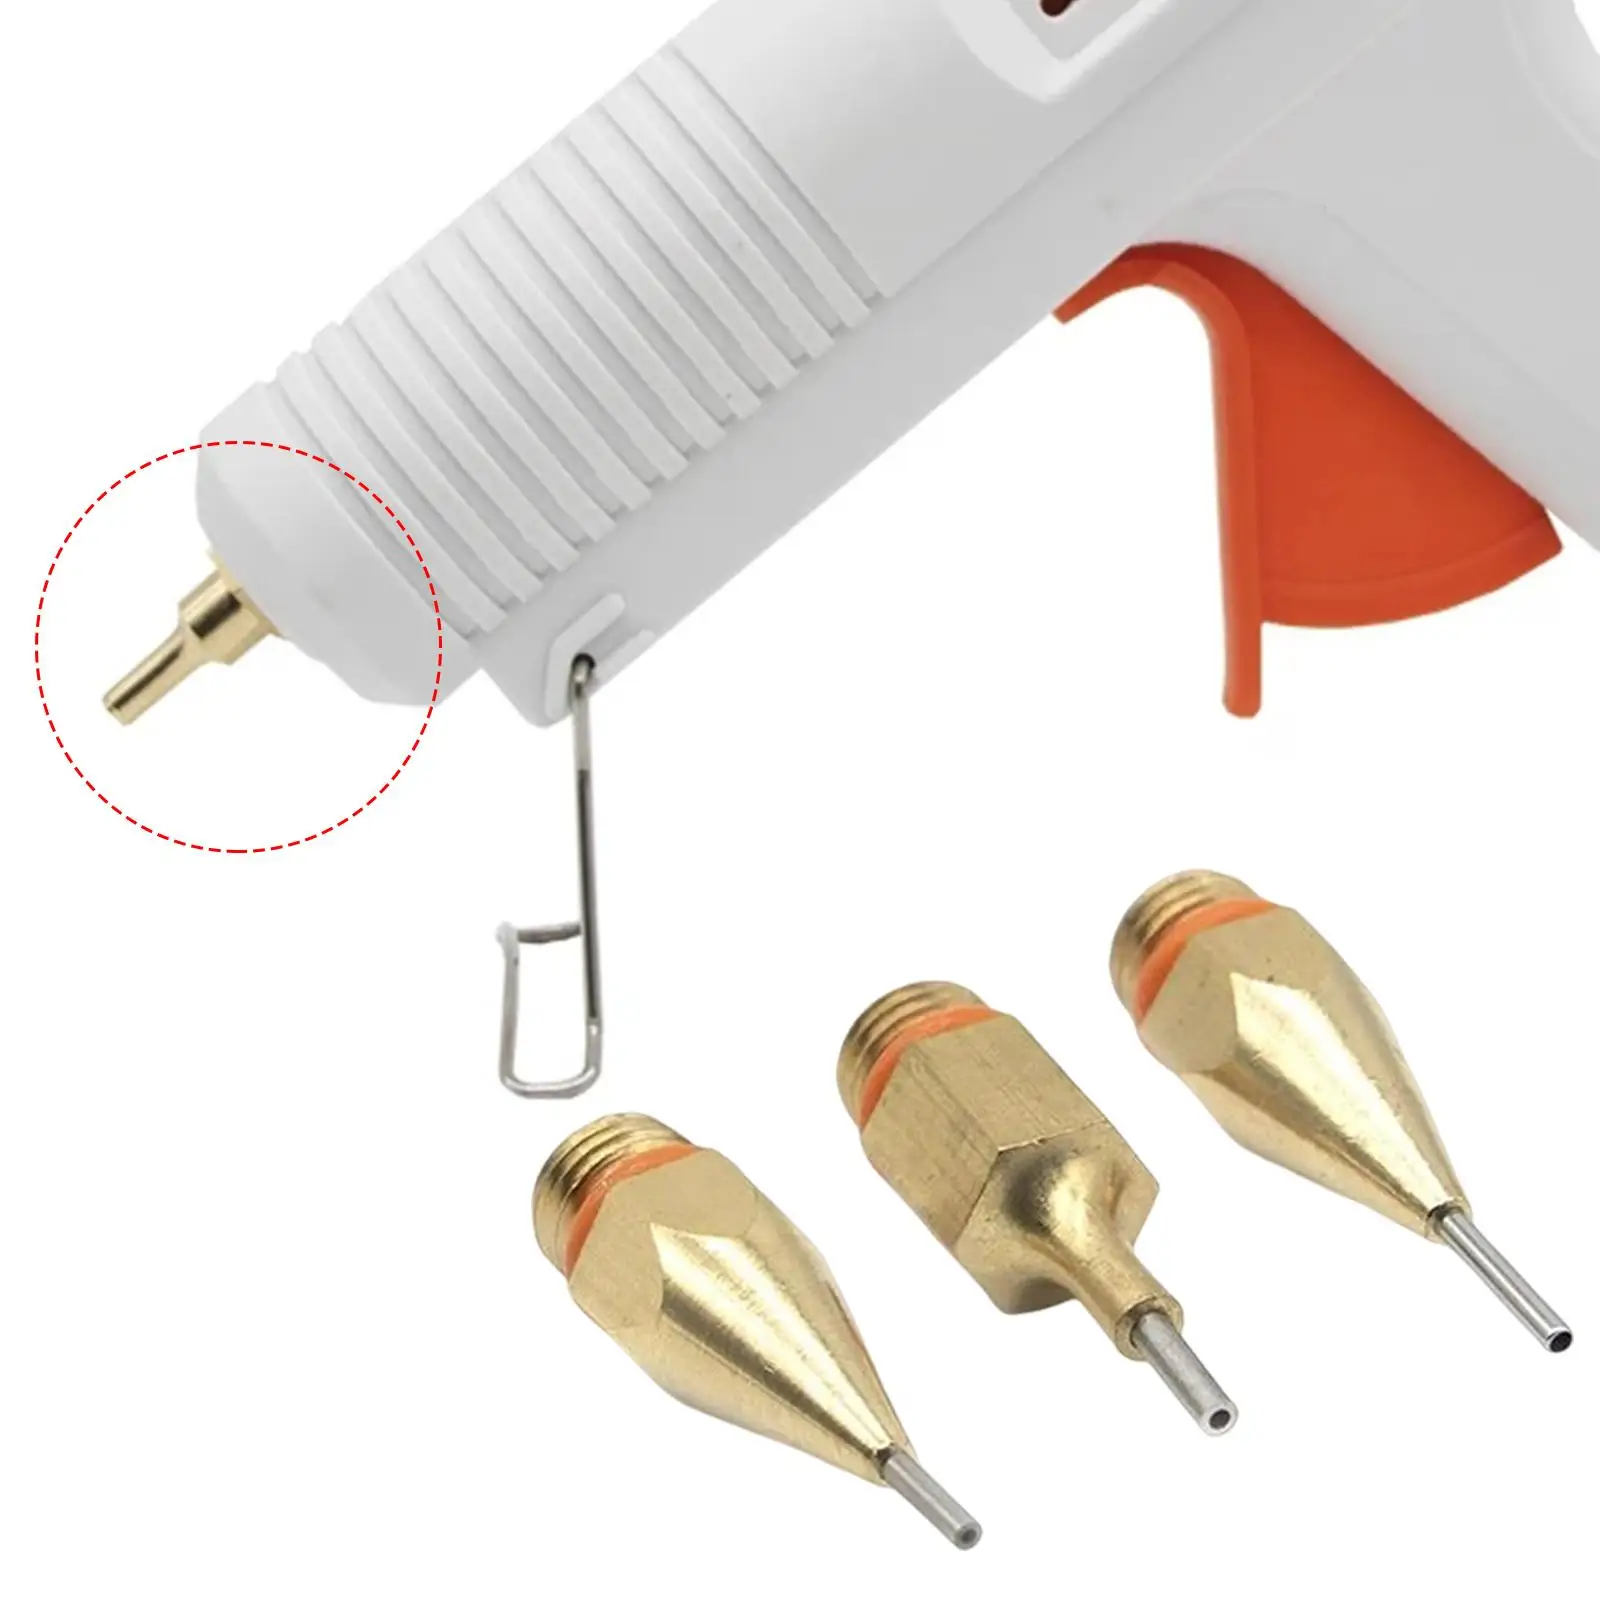 3Pcs Hot Glue Tool Nozzles Replaceable Parts 7/16Inches Thread Copper Nozzle